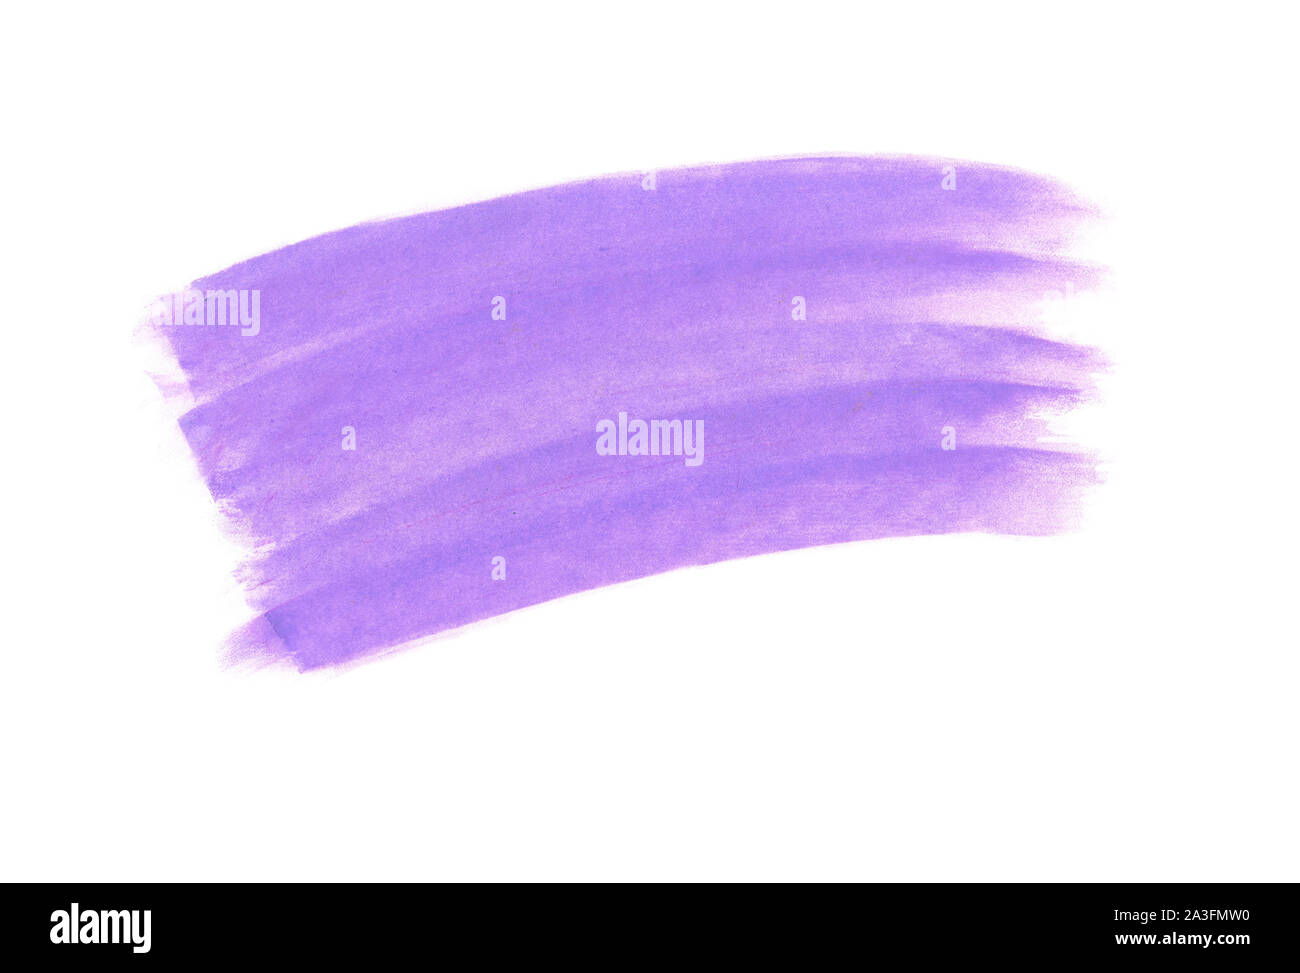 Violett/Lavendel Kreide Strich auf weißem Hintergrund, grunge Textur, können in sozialen Medien Beiträge oder Werbung verwendet werden. Stockfoto